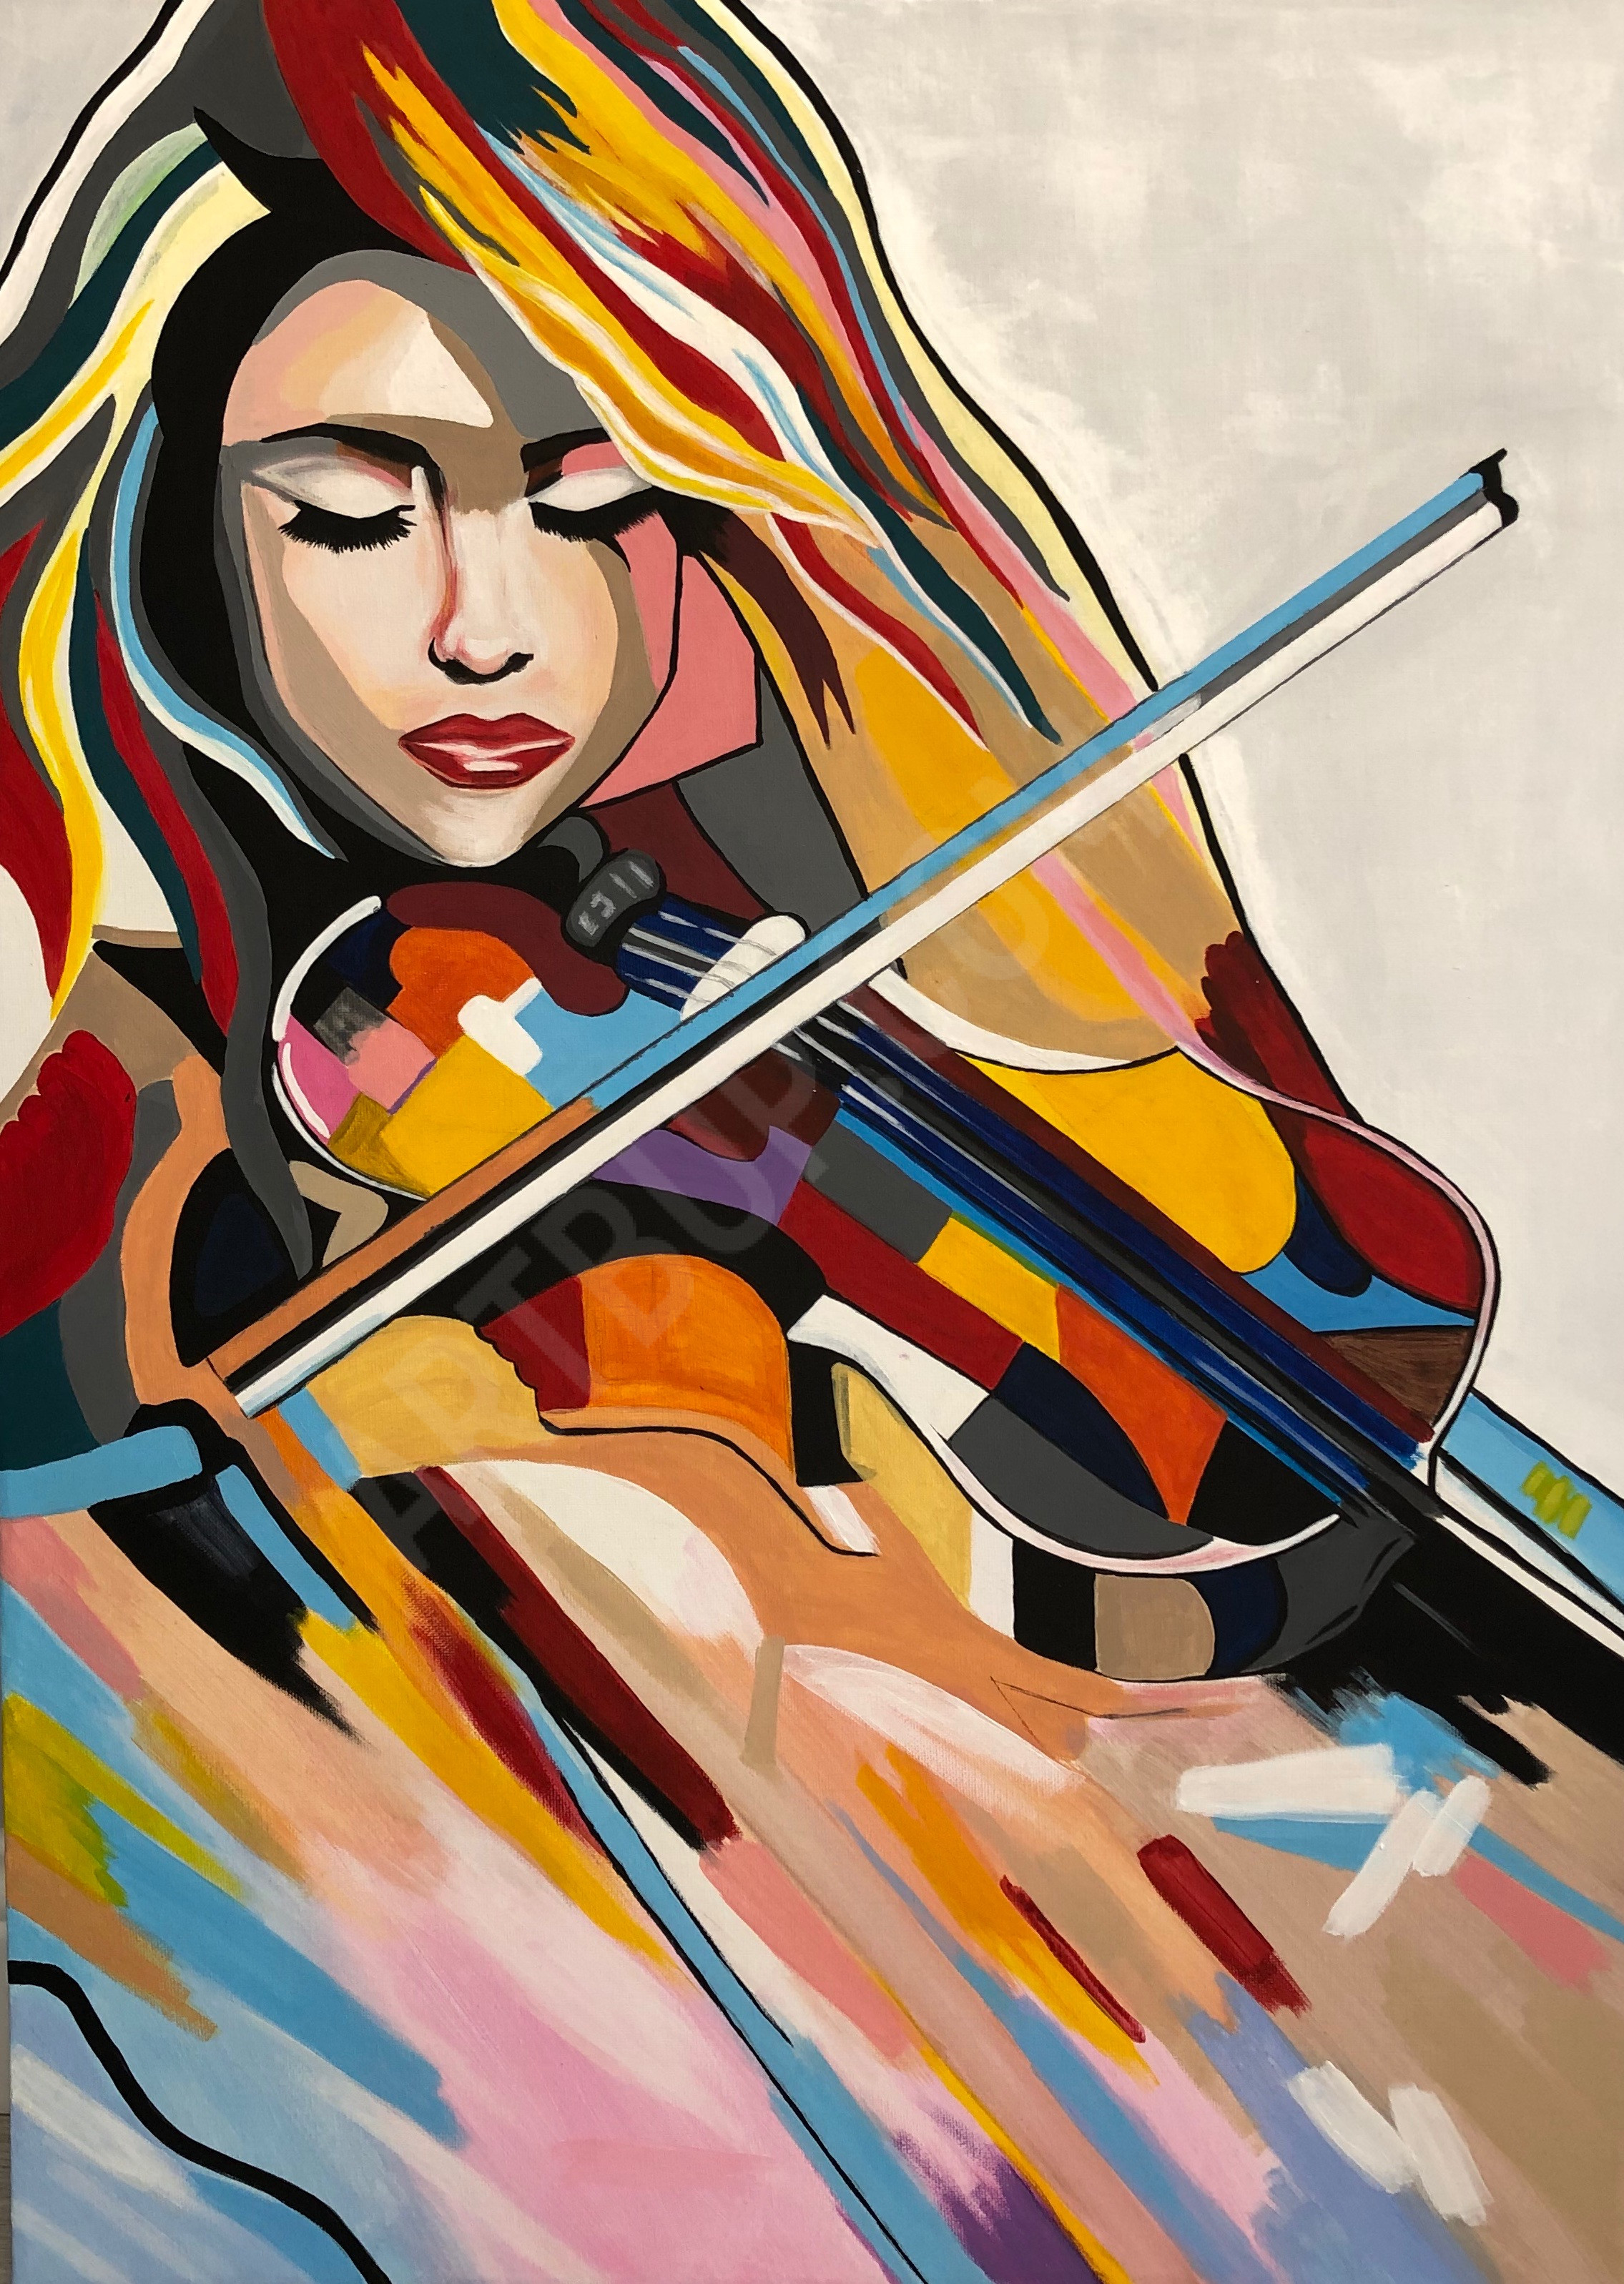 Девушка со скрипкой